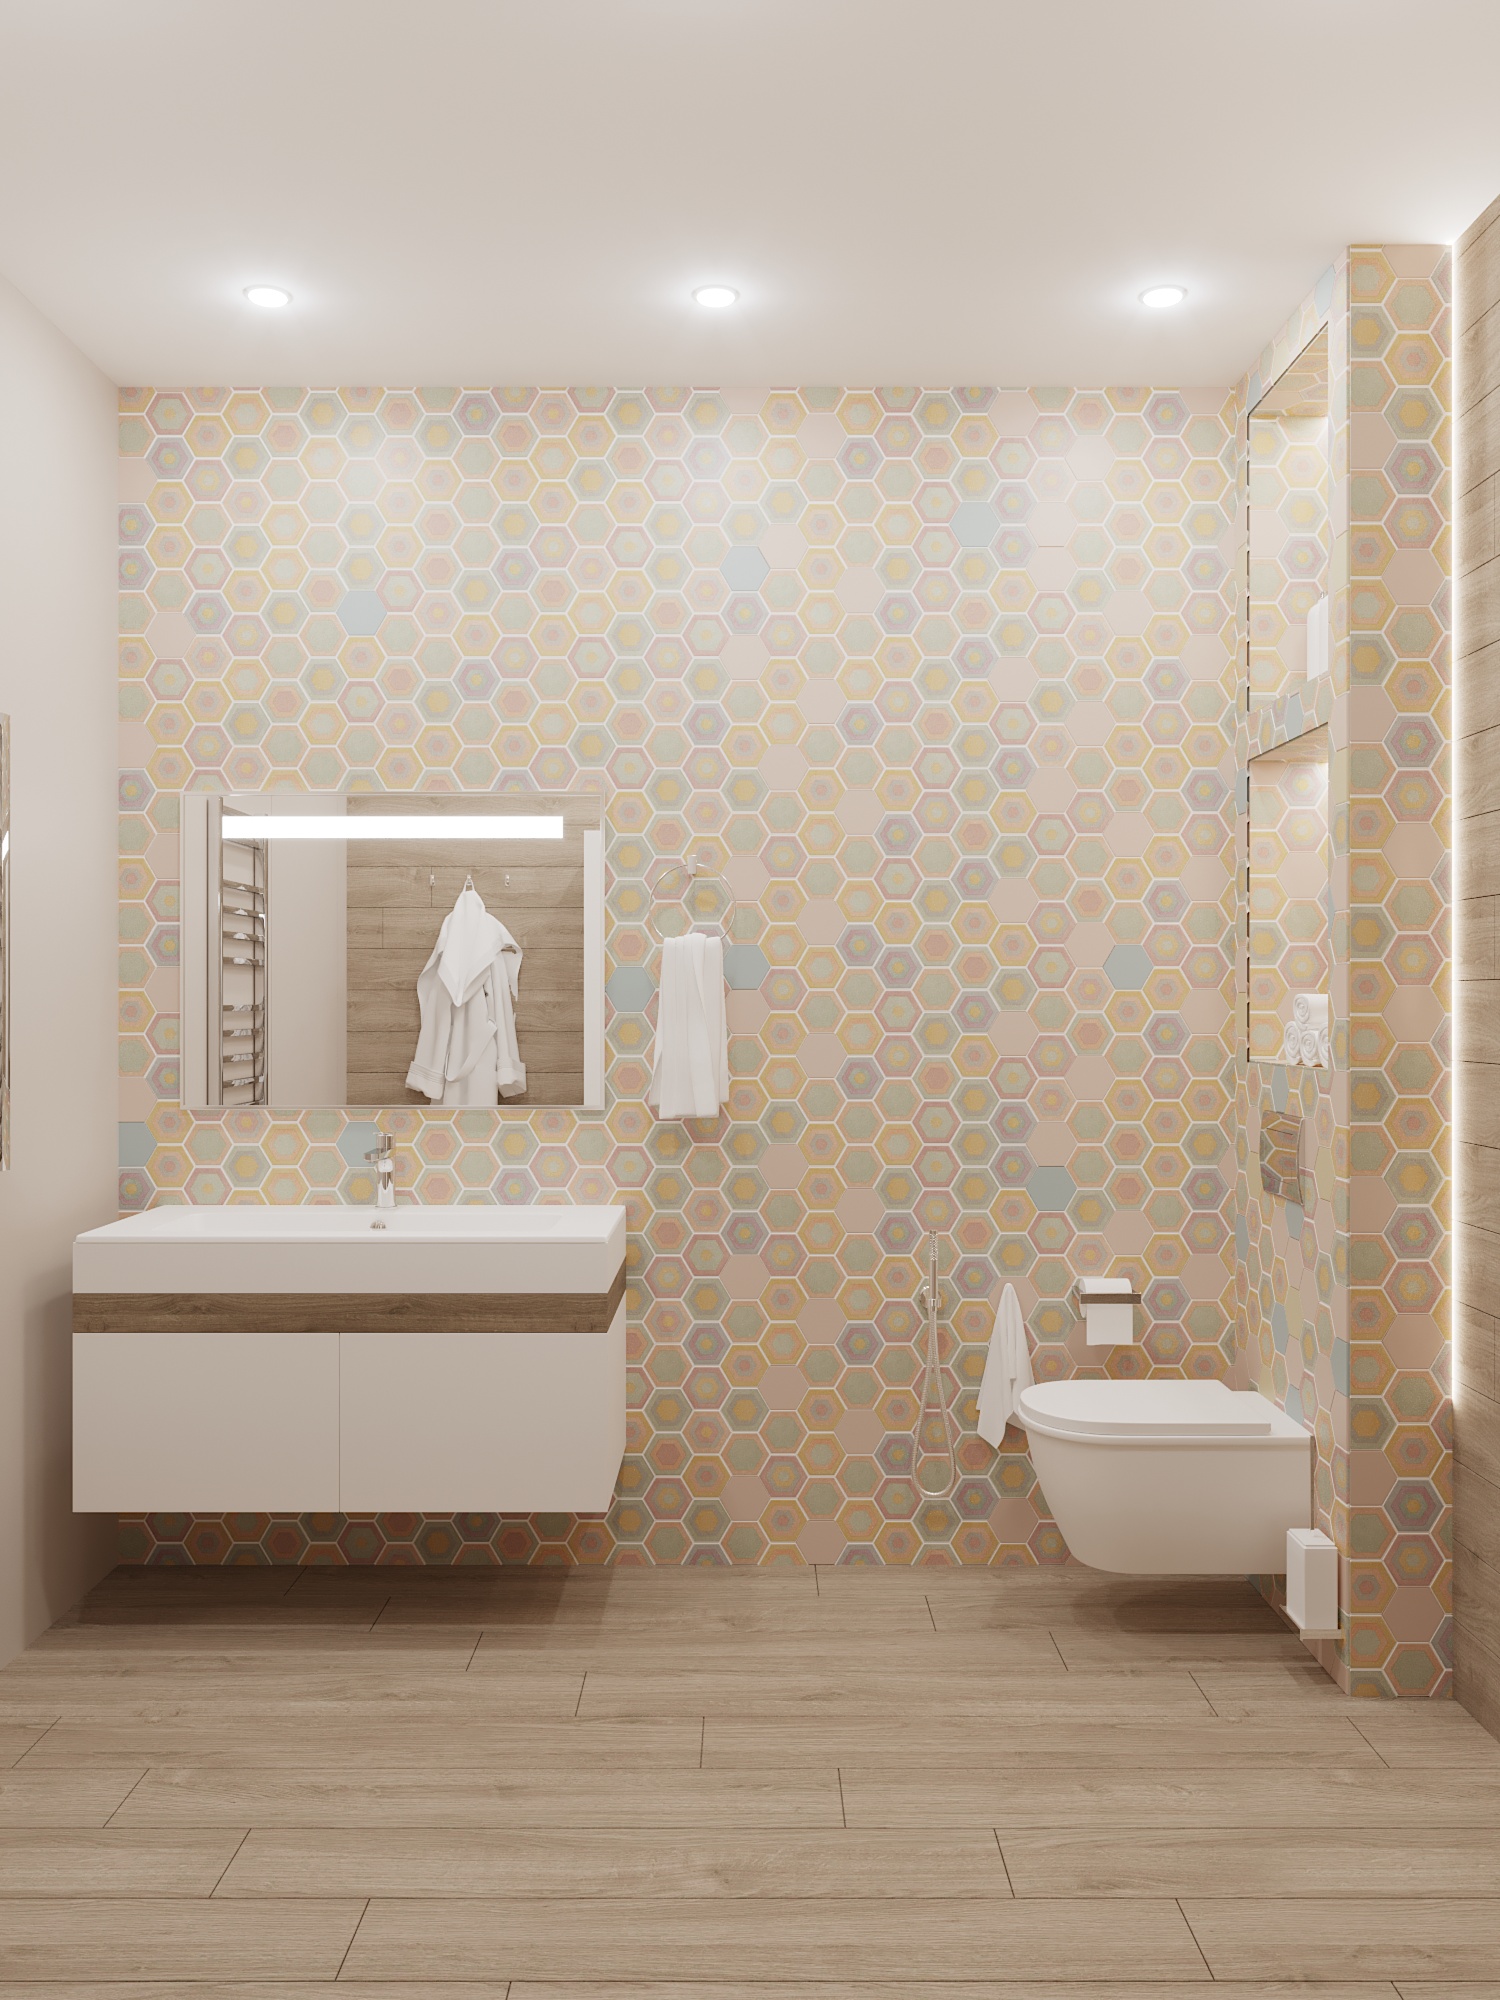 Фото № 4: Как обновить интерьер ванной комнаты без капитального ремонта: 7 идей